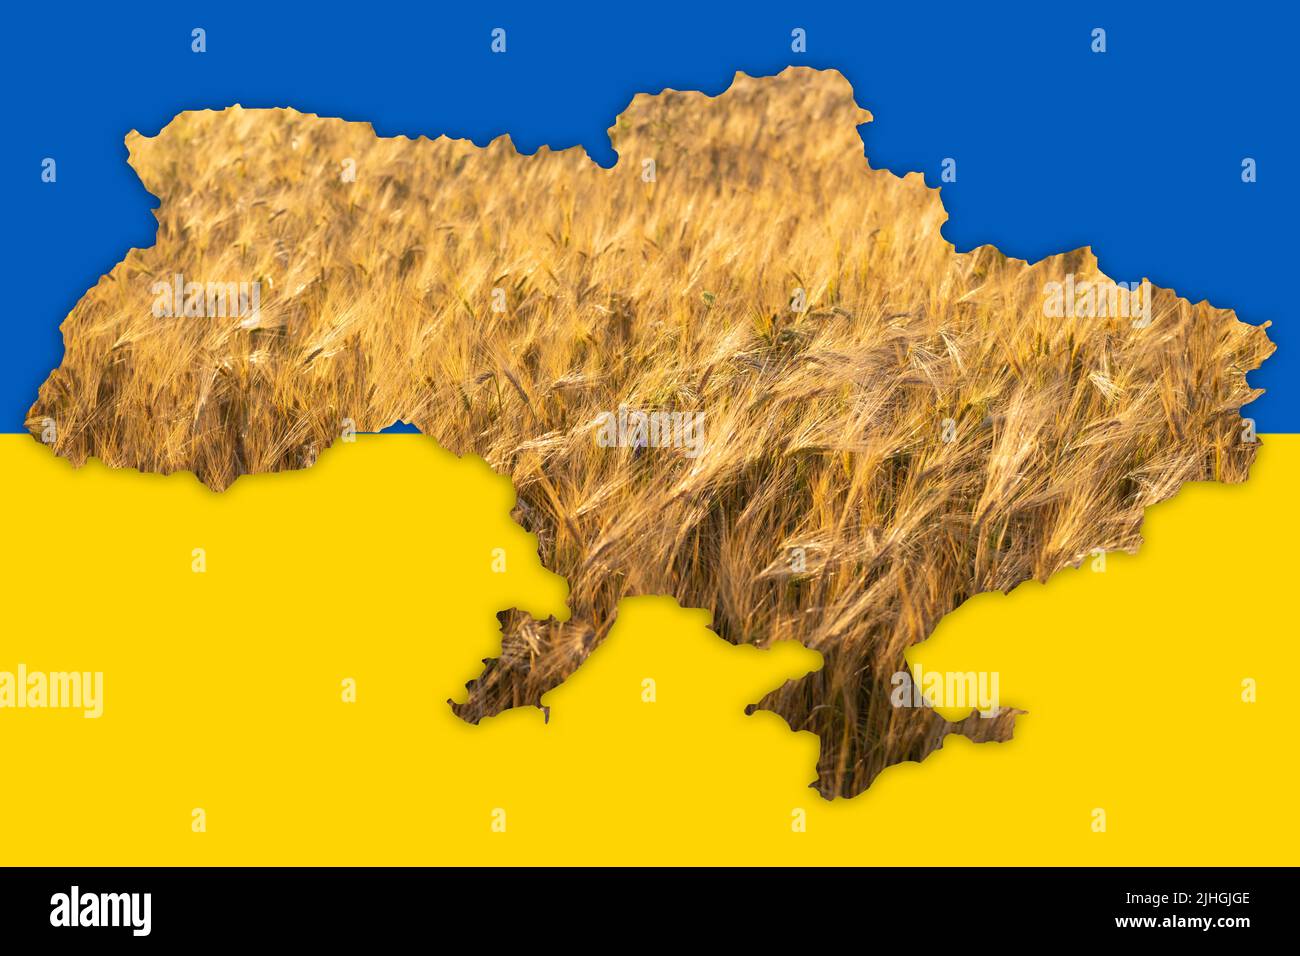 Konzeptuelles Bild der Karte der Ukraine, weltweite Nahrungsmittelkrise durch die russische Invasion Stockfoto